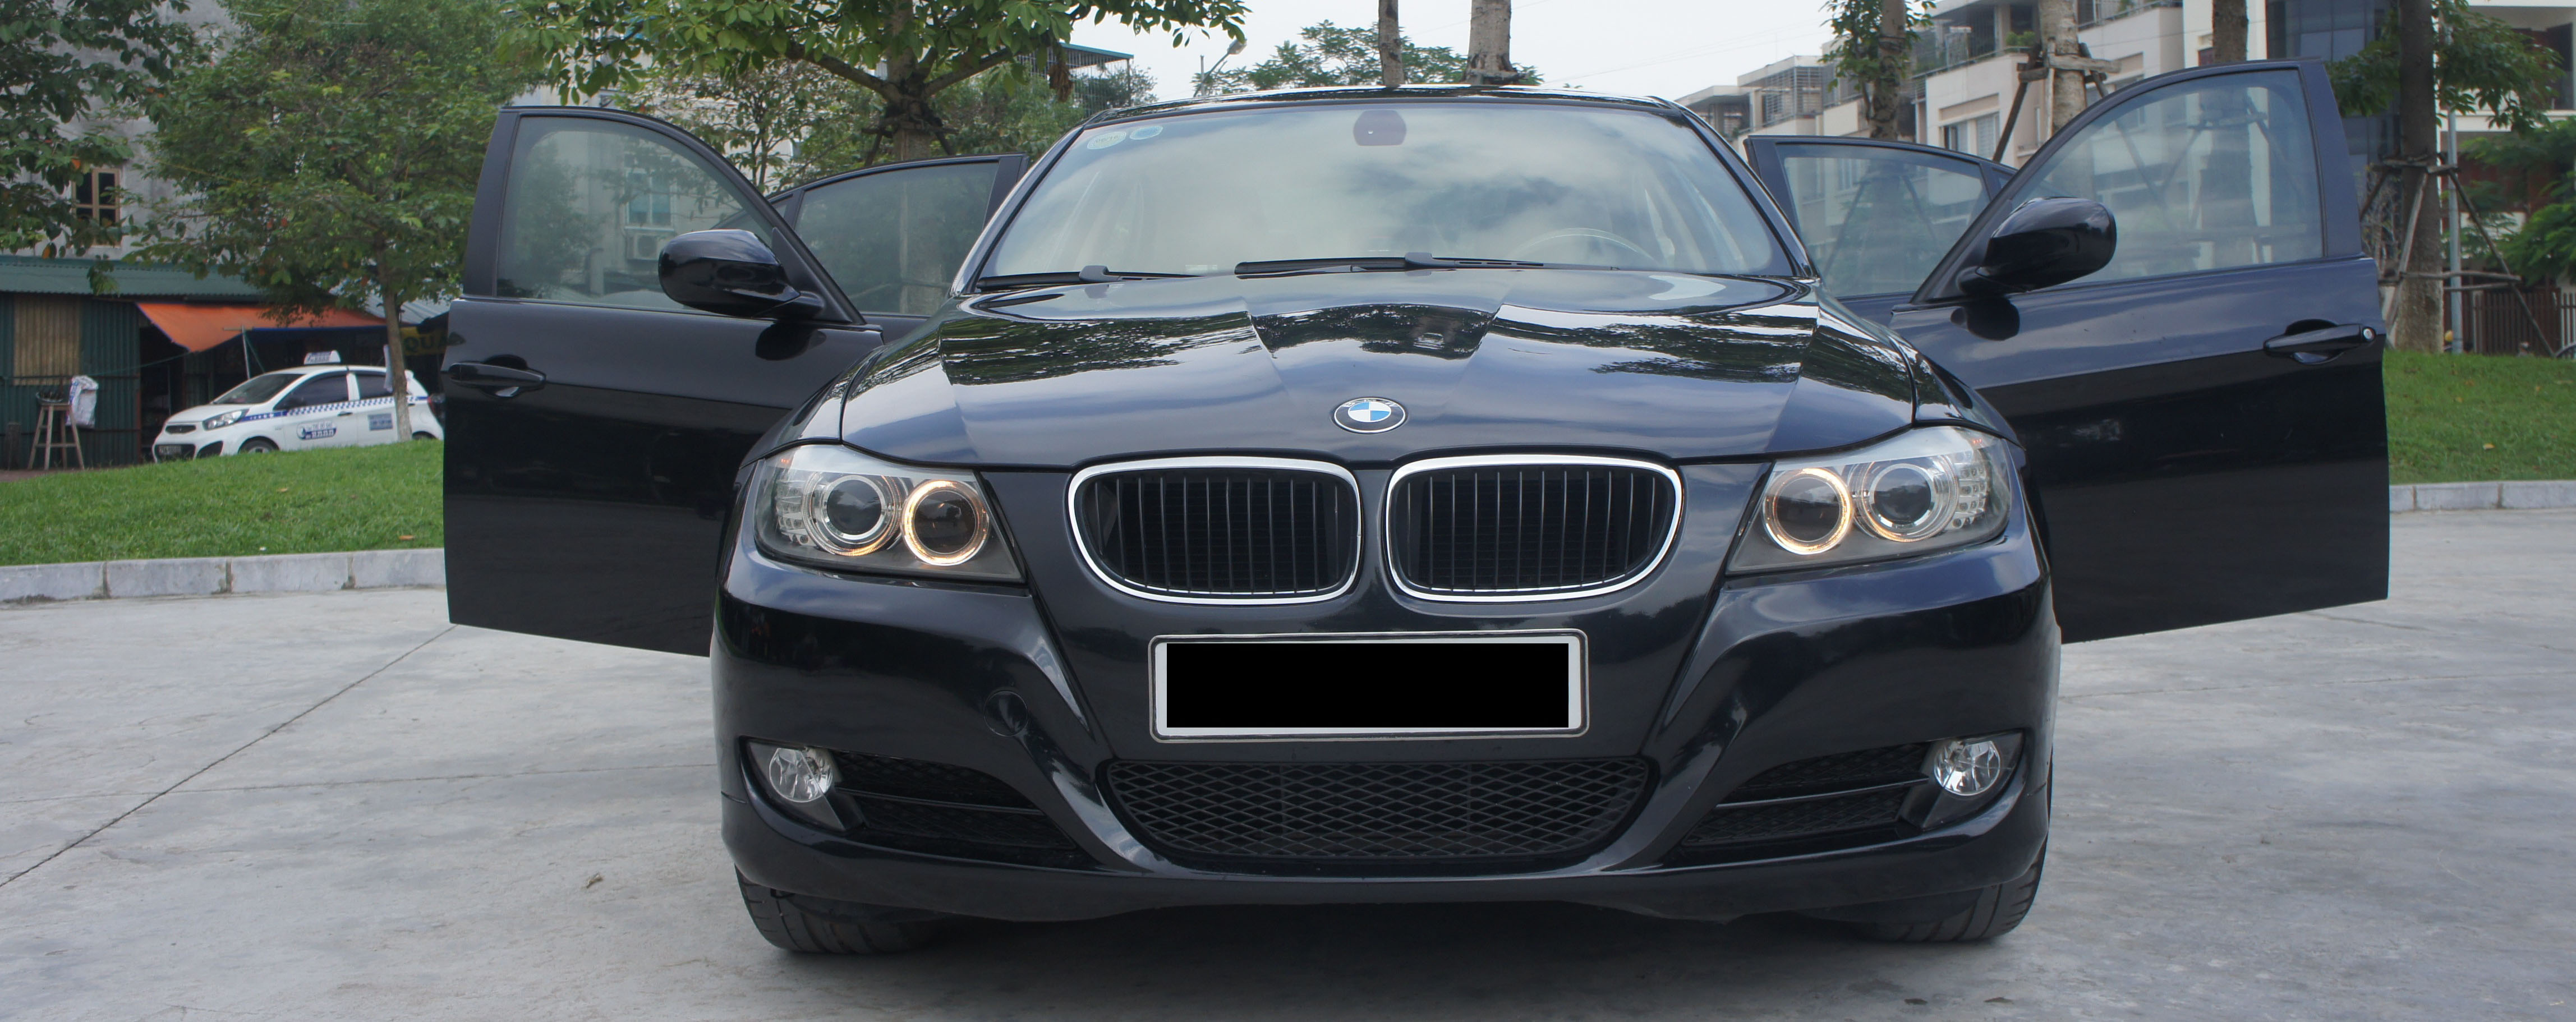 Giảm nguy cơ sửa chữa xe BMW khi mua cũ